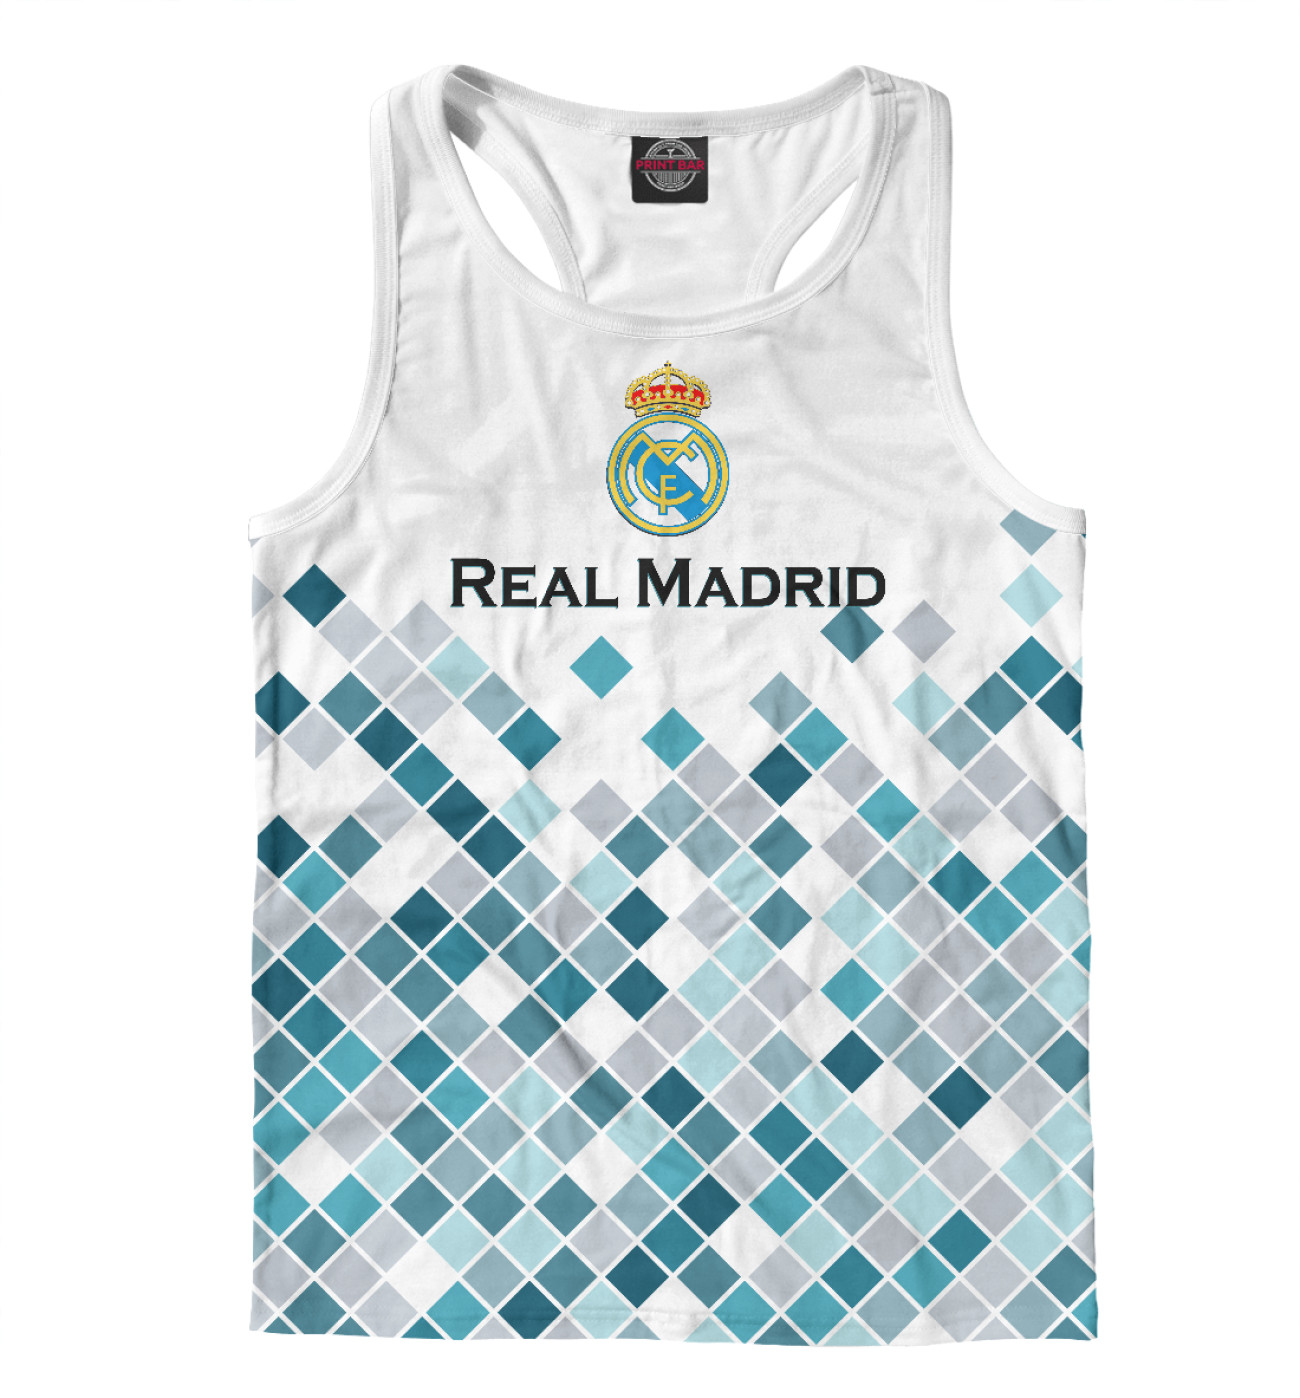 Мужская Борцовка Real Madrid, артикул: REA-737951-mayb-2